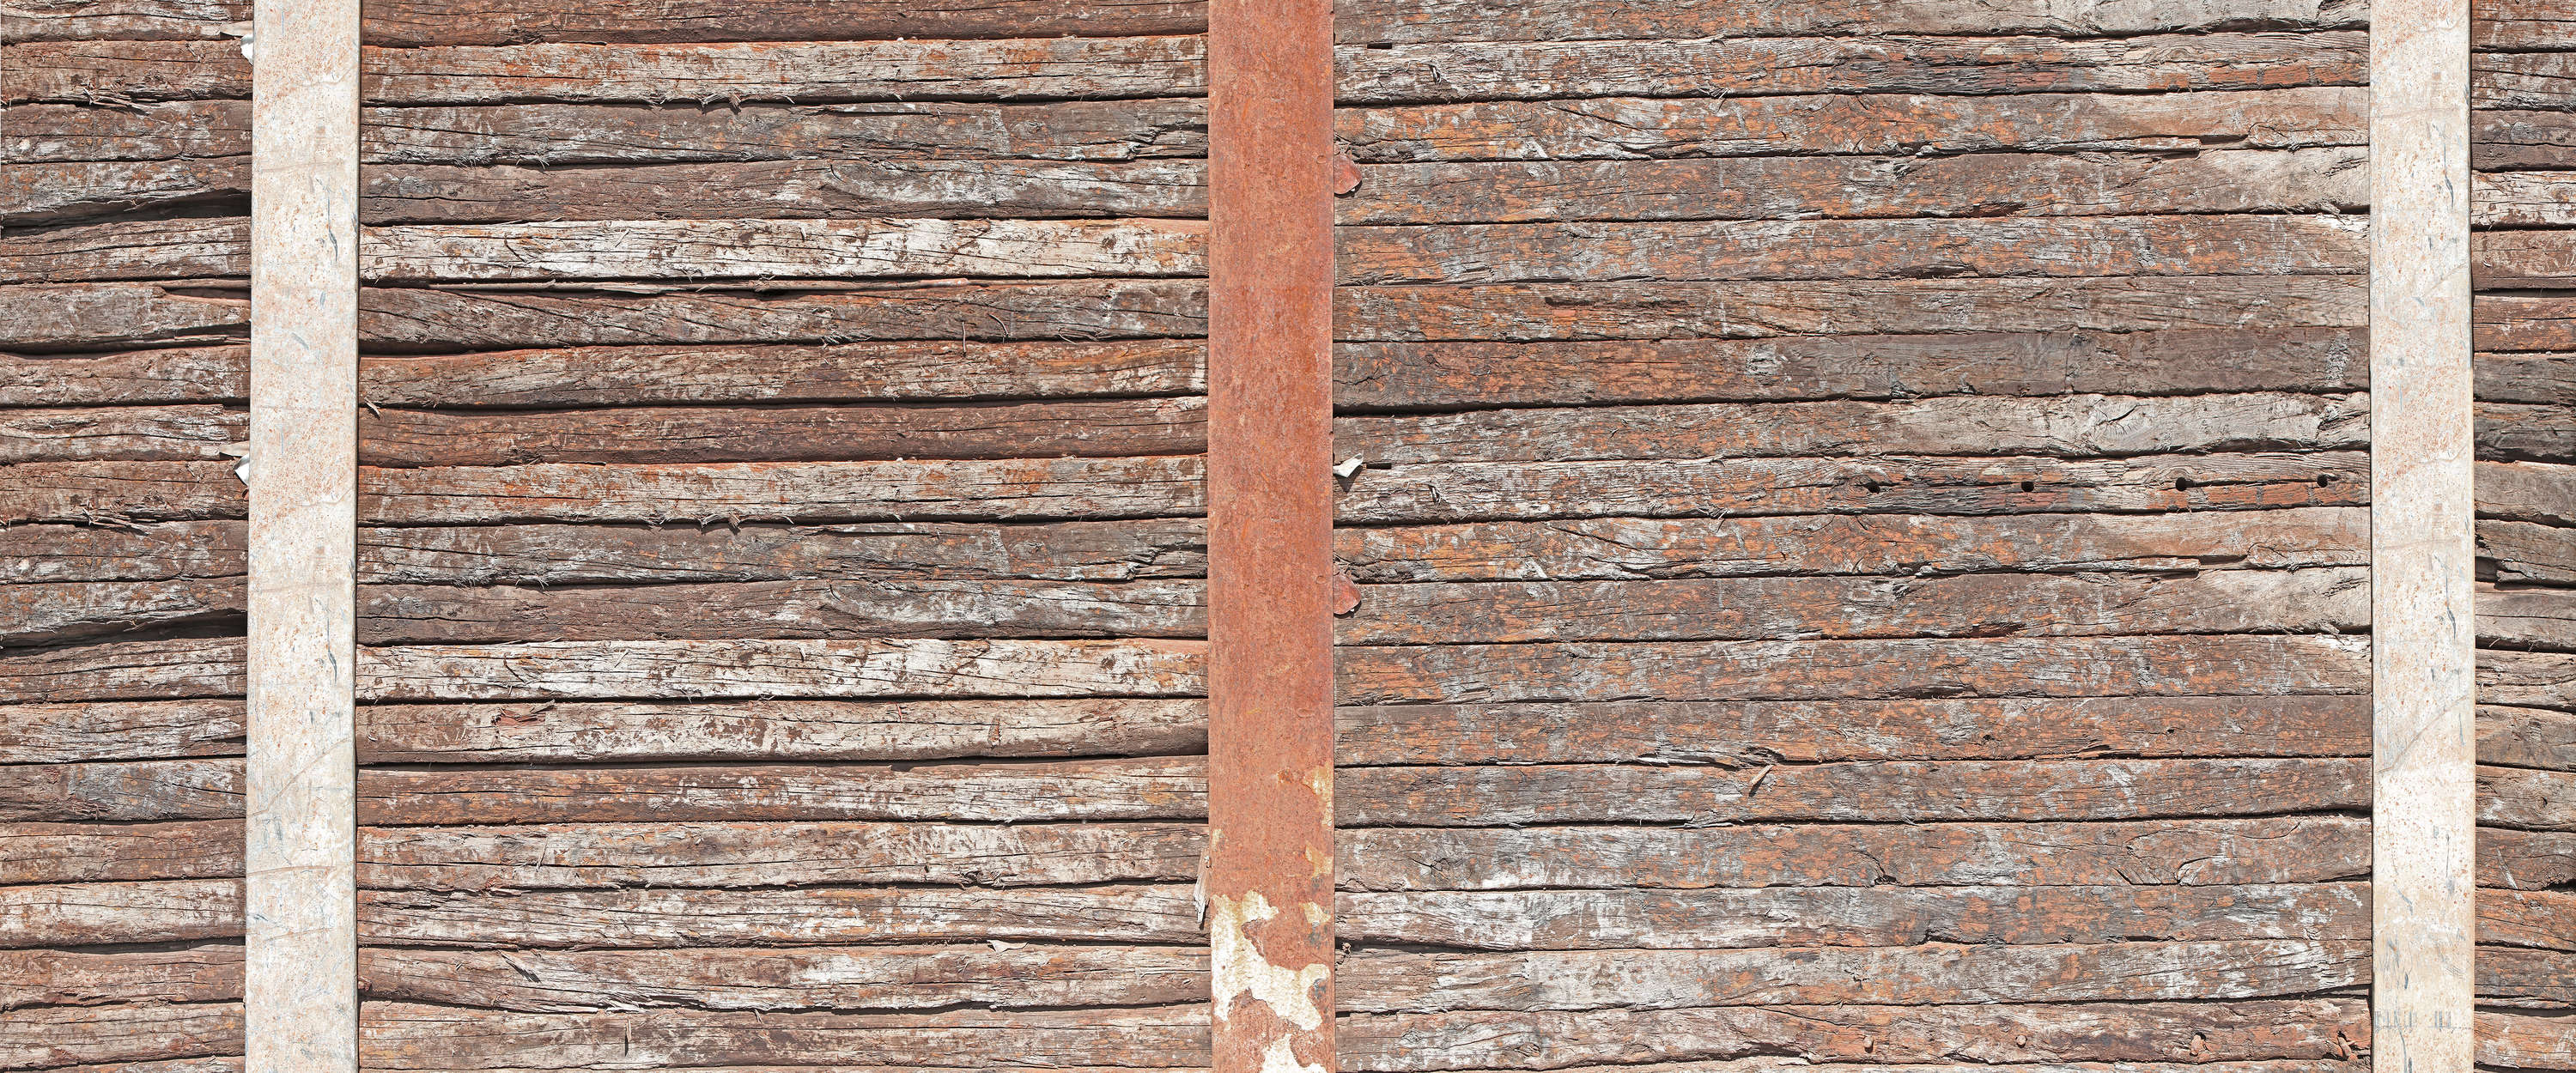             Mural de la pared de madera vieja entre vigas de acero oxidadas
        